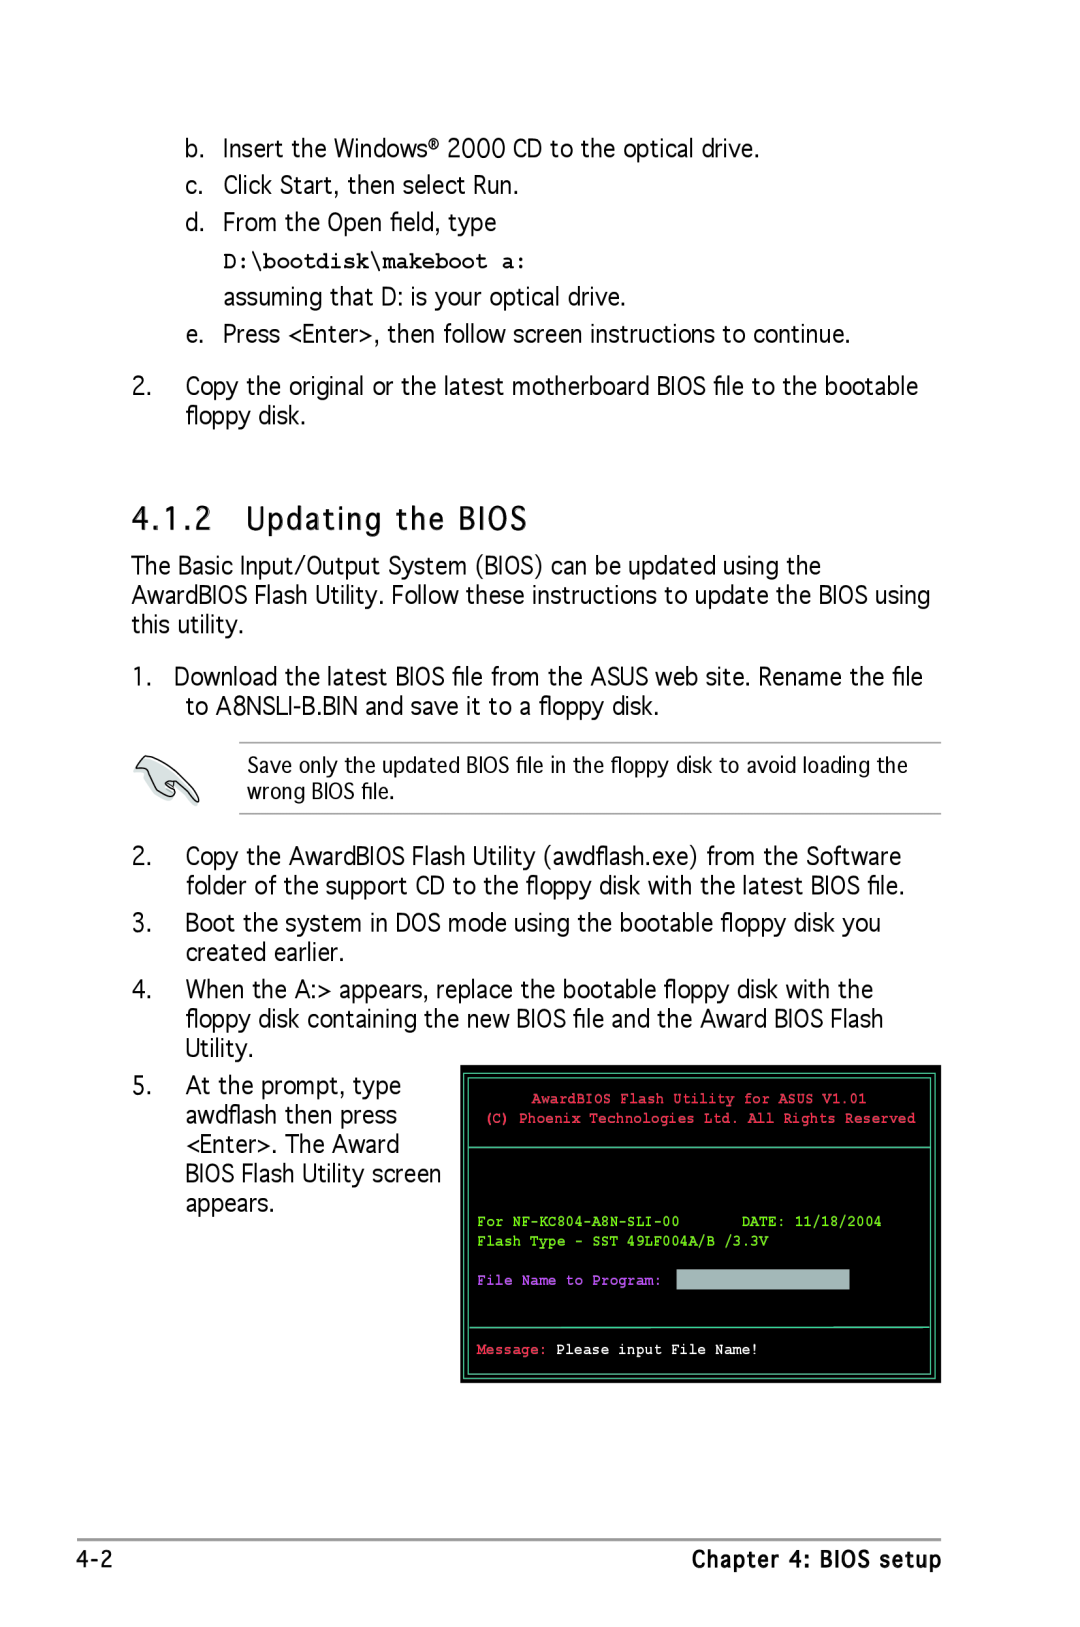 Asus A8N-SLI SE manual Updating the BIOS 